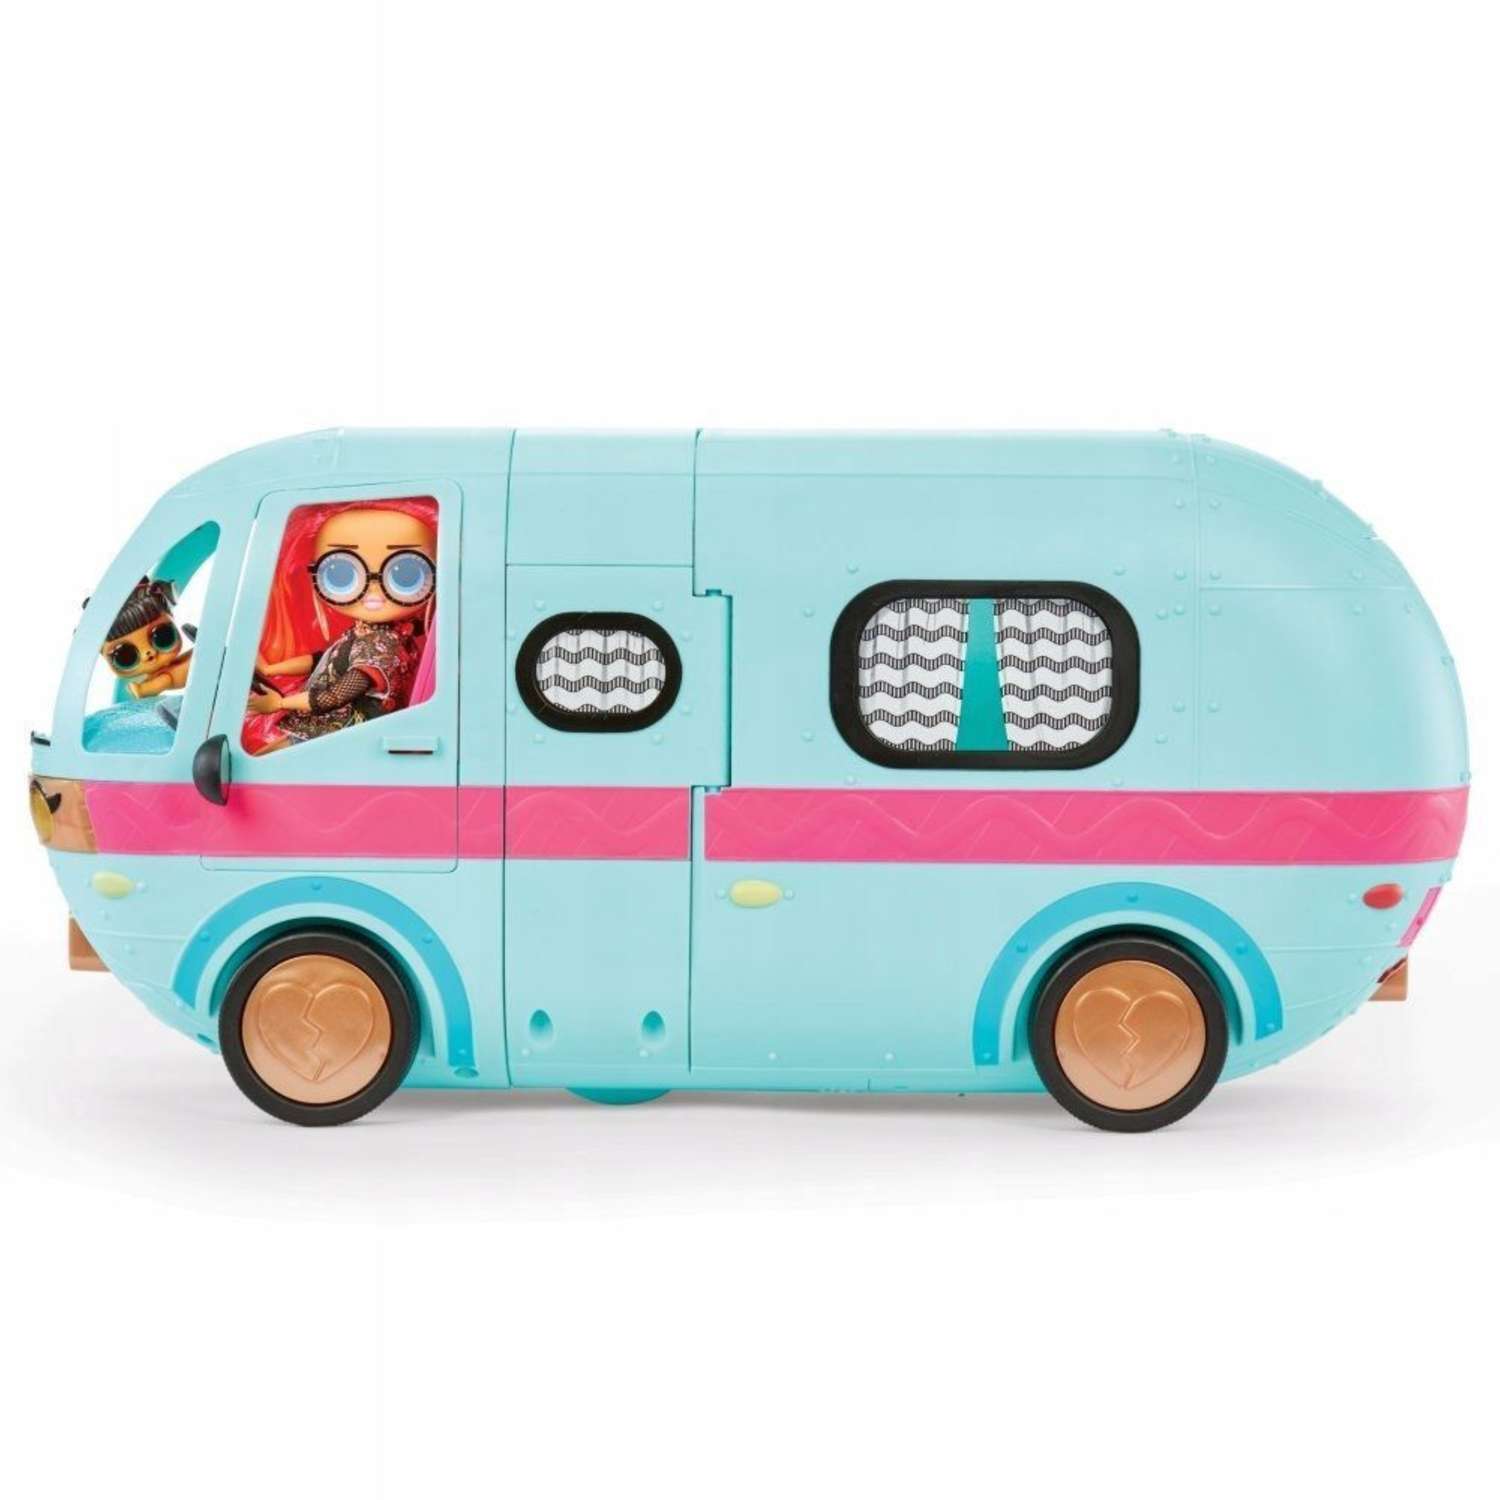 Транспорт для кукол L.O.L. Surprise! Автобус O.M.G. Glamper Fashion Camper, бирюзовый playmates toys фигурка билли айлиш когда закончится вечеринка